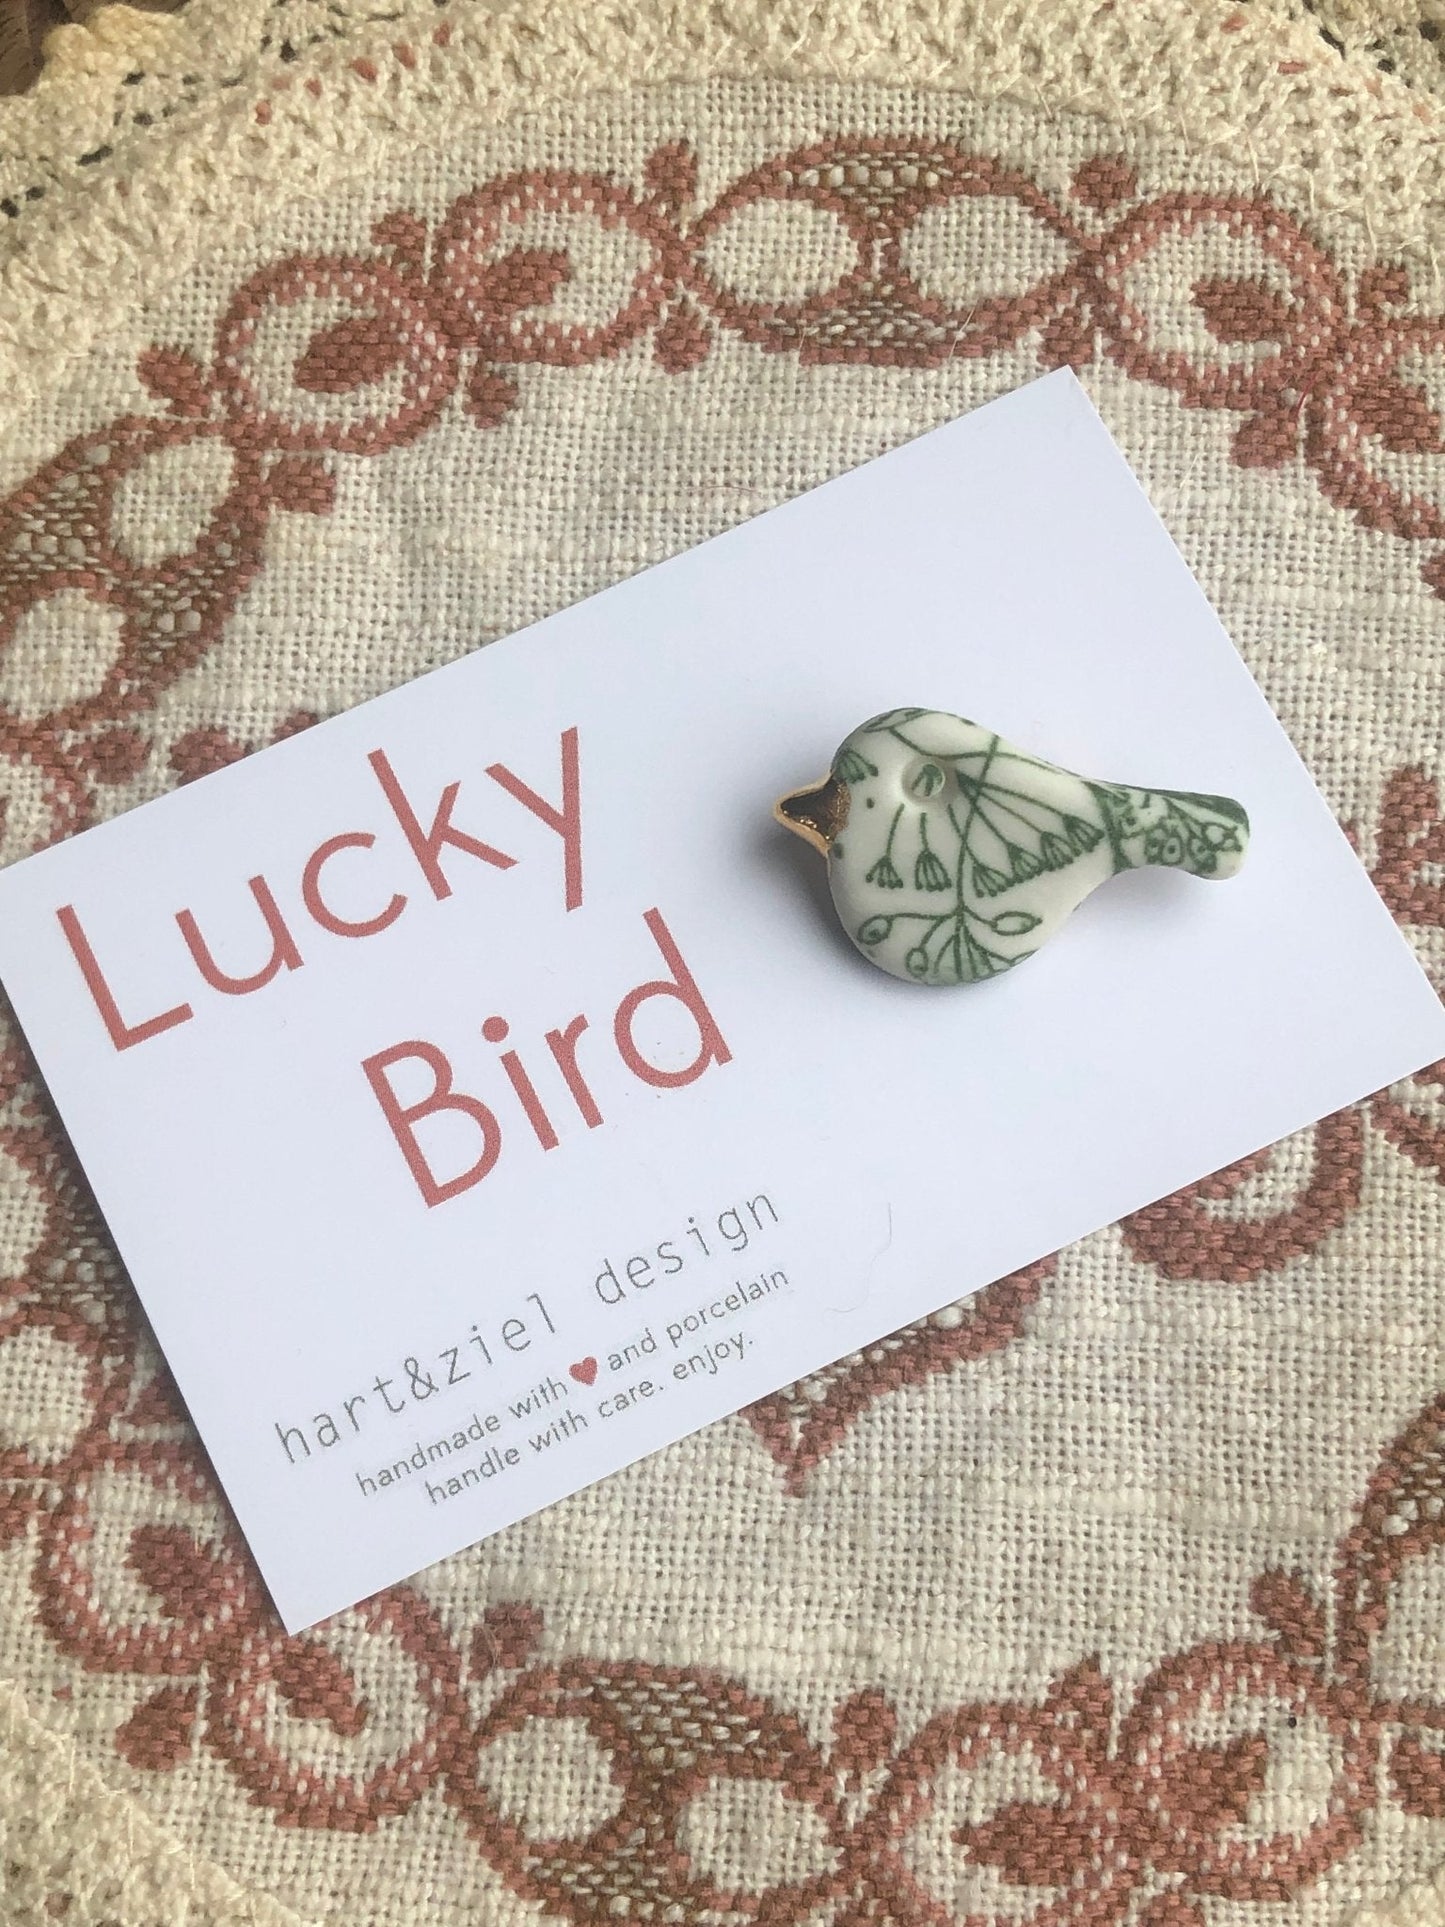 Lucky Bird - Flora green 03 - hart&ziel design